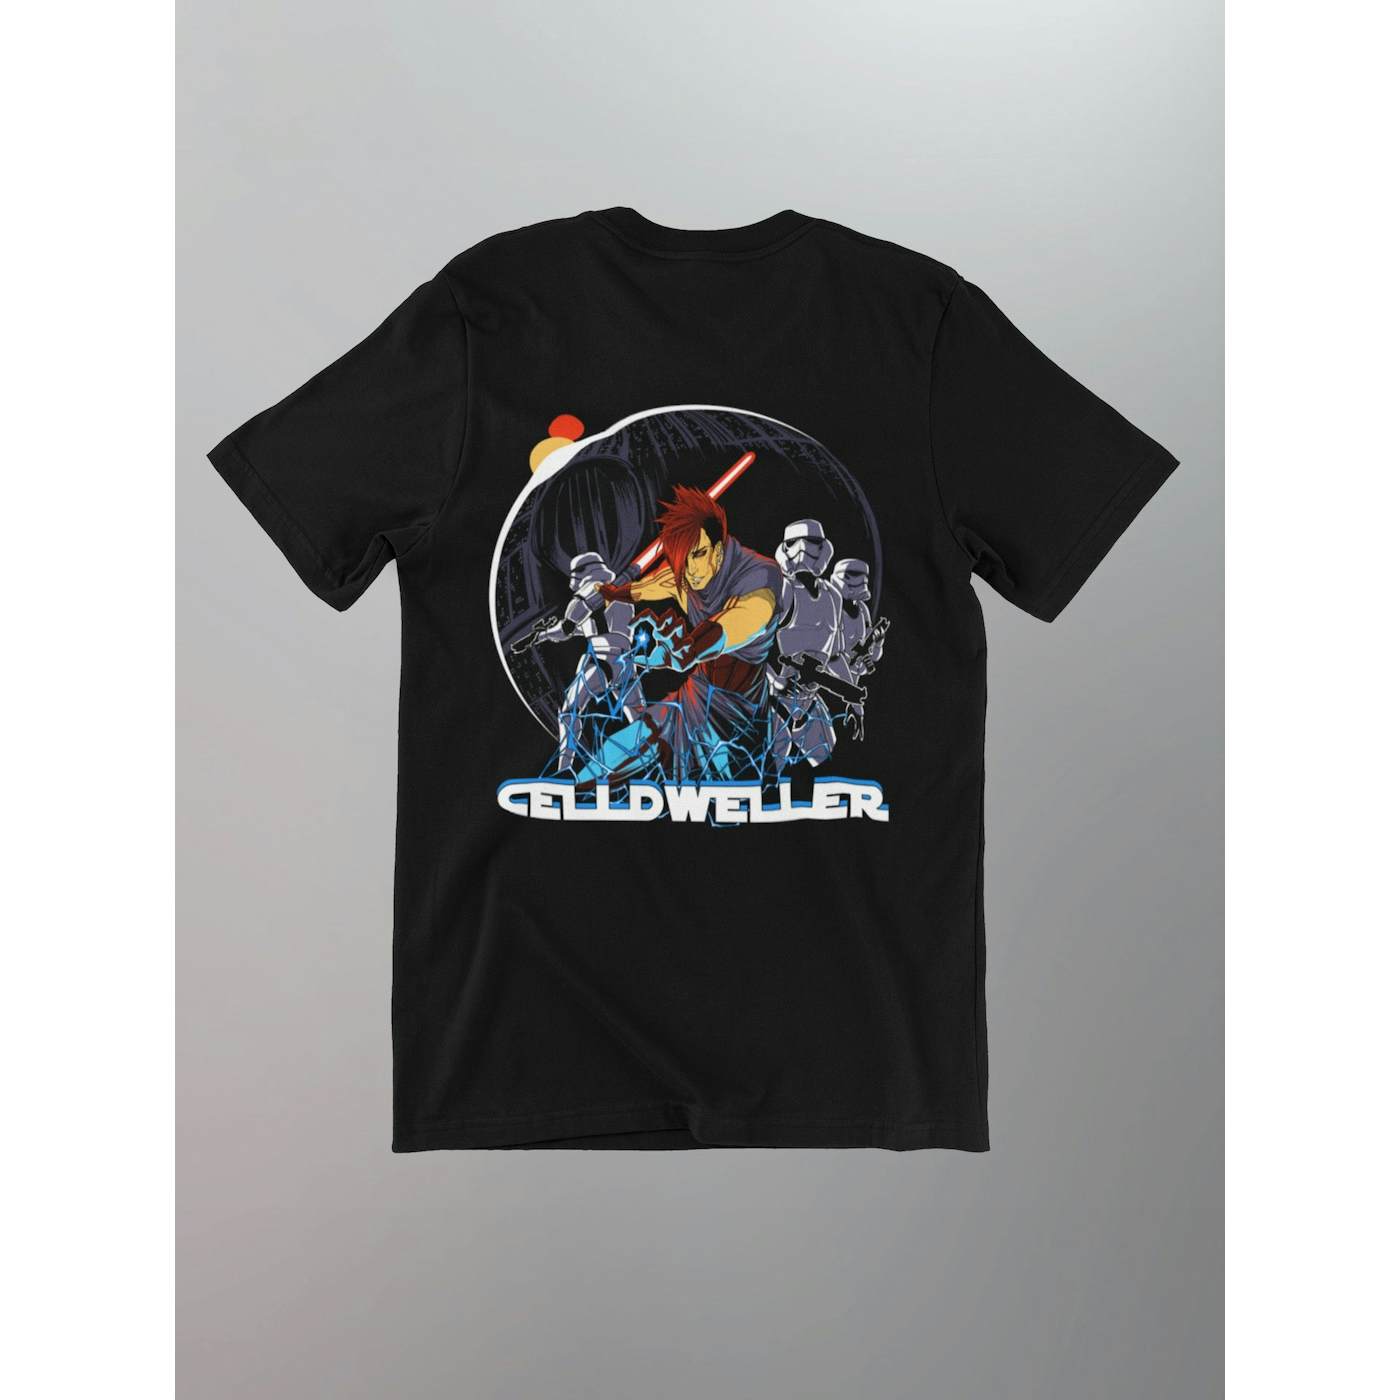 Celldweller - Sith Shirt